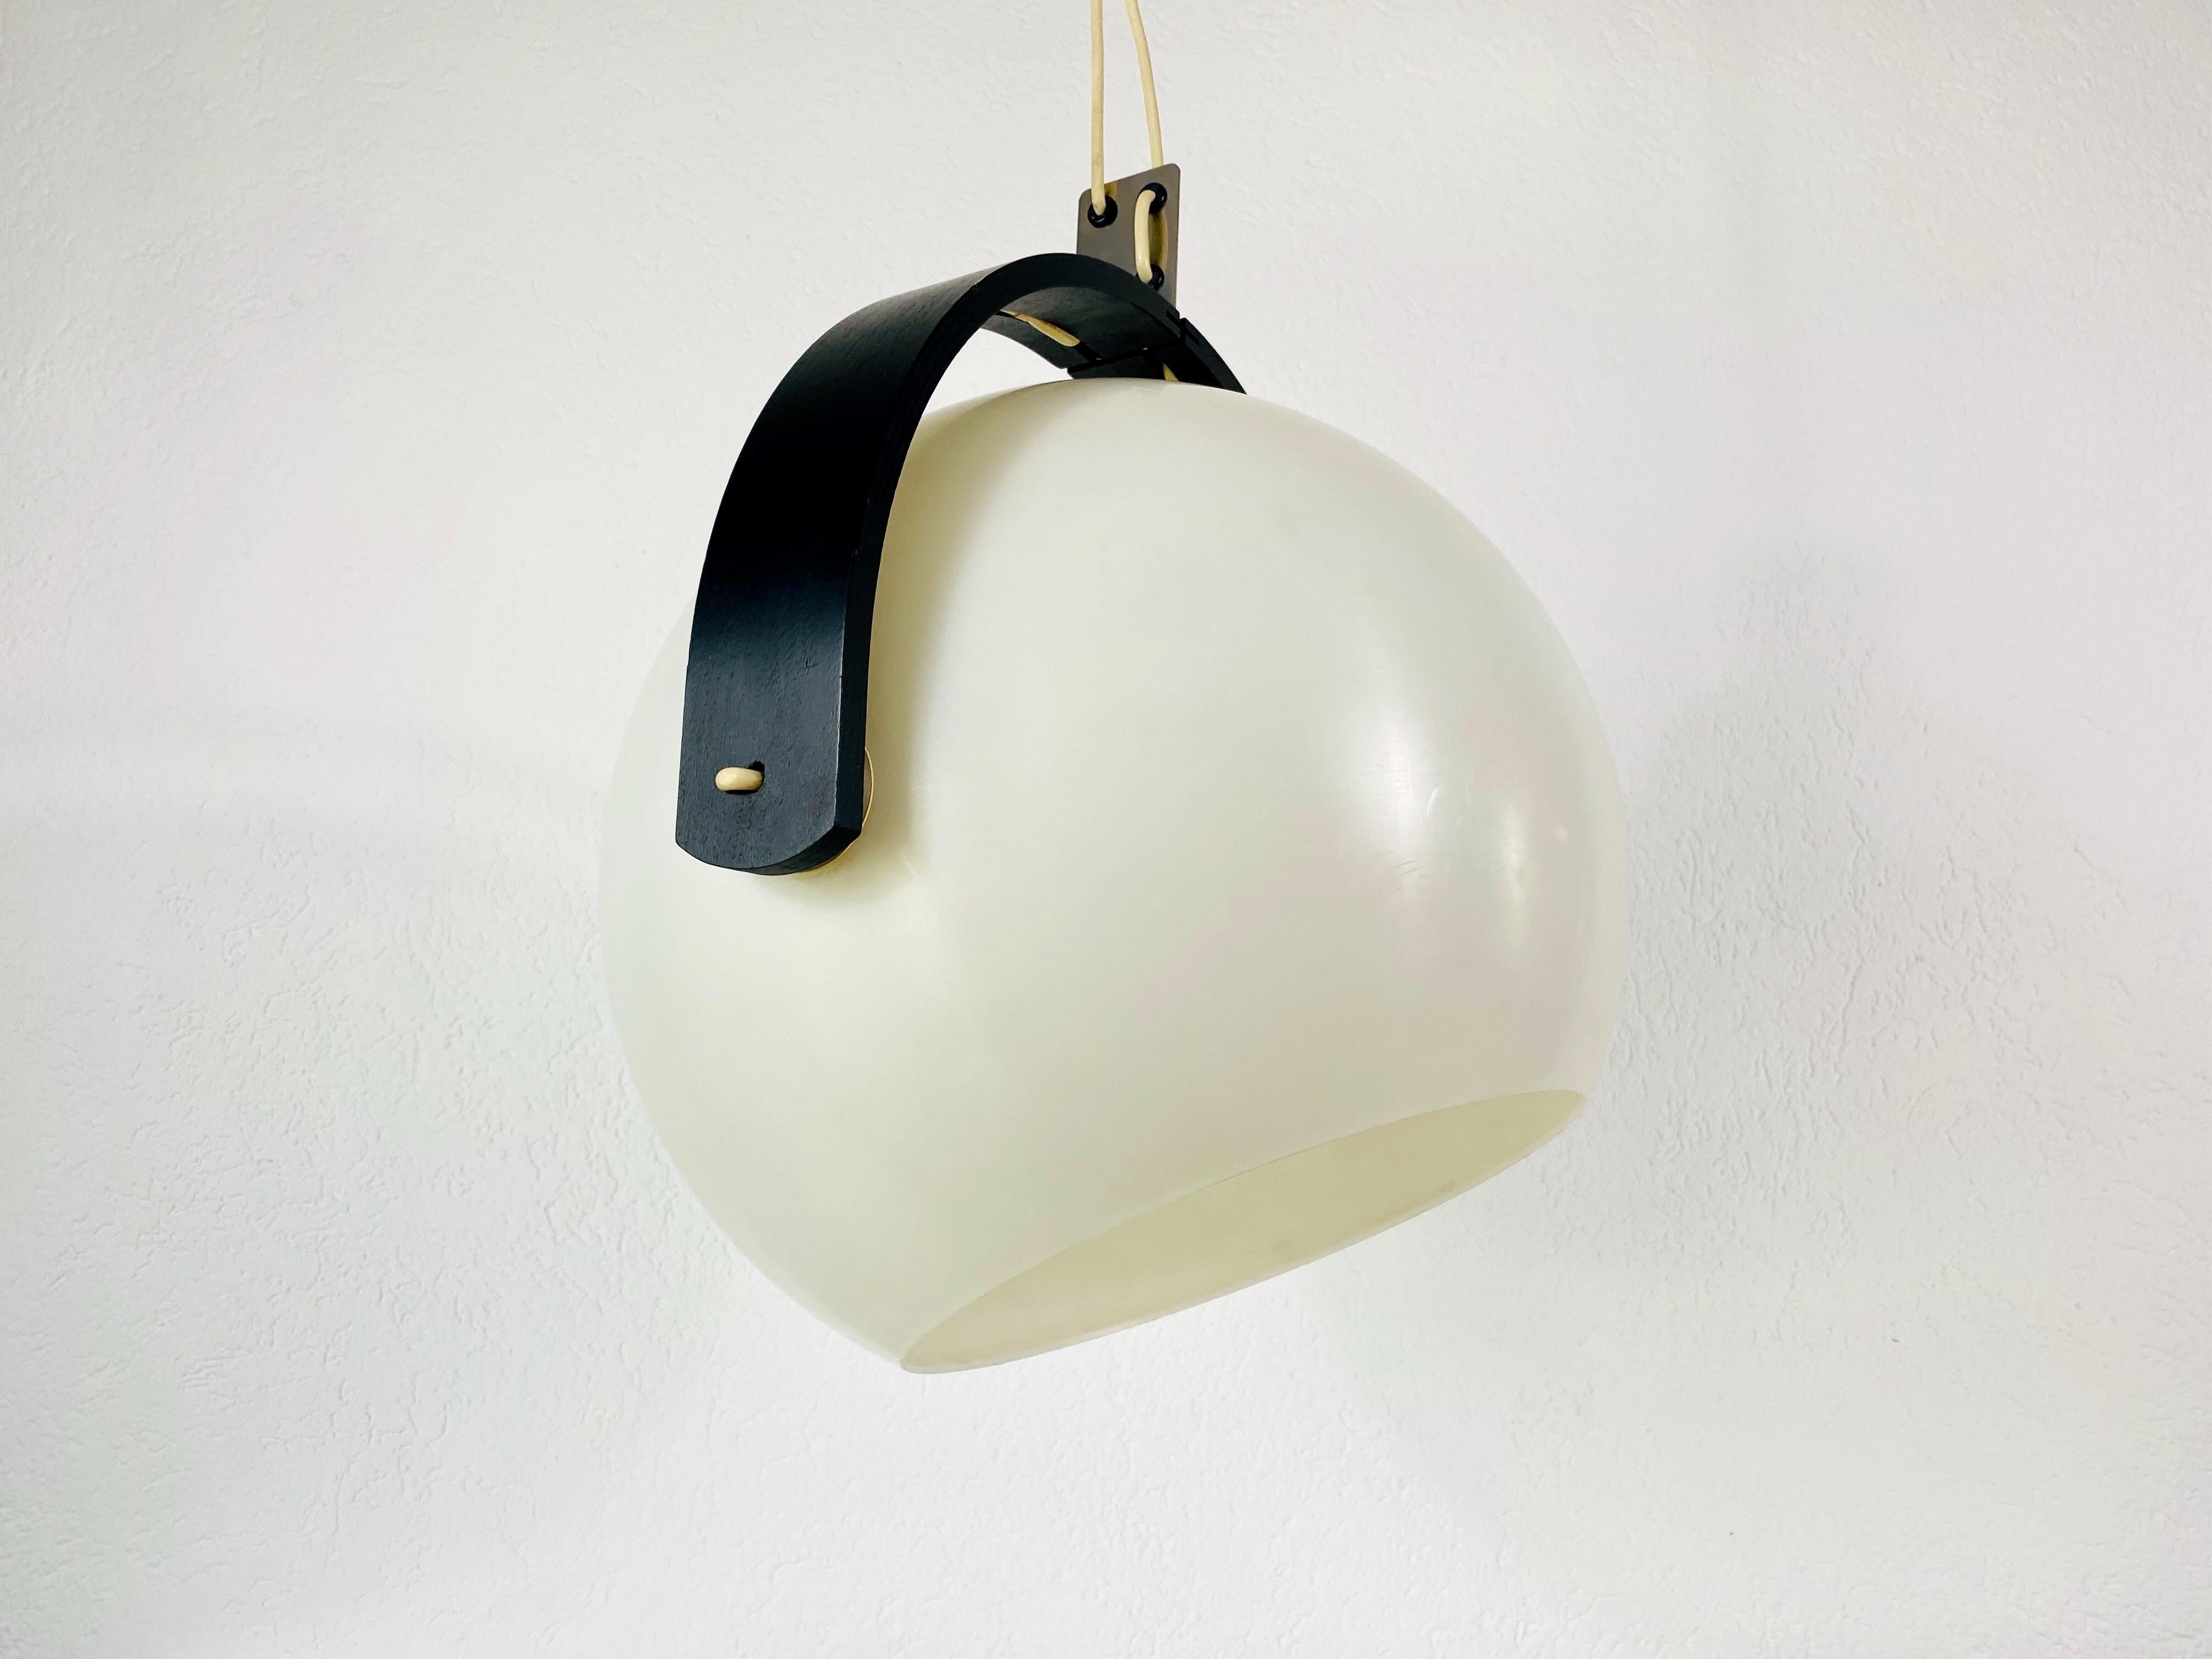 Lampe suspendue noire et blanche par Temde dans les années 1970. Il est fabriqué en bois et en plastique.

Mesures : Hauteur 42-120 cm
Diamètre 42 cm

Le luminaire nécessite une ampoule E27. Très bon état vintage.

Expédition gratuite dans le